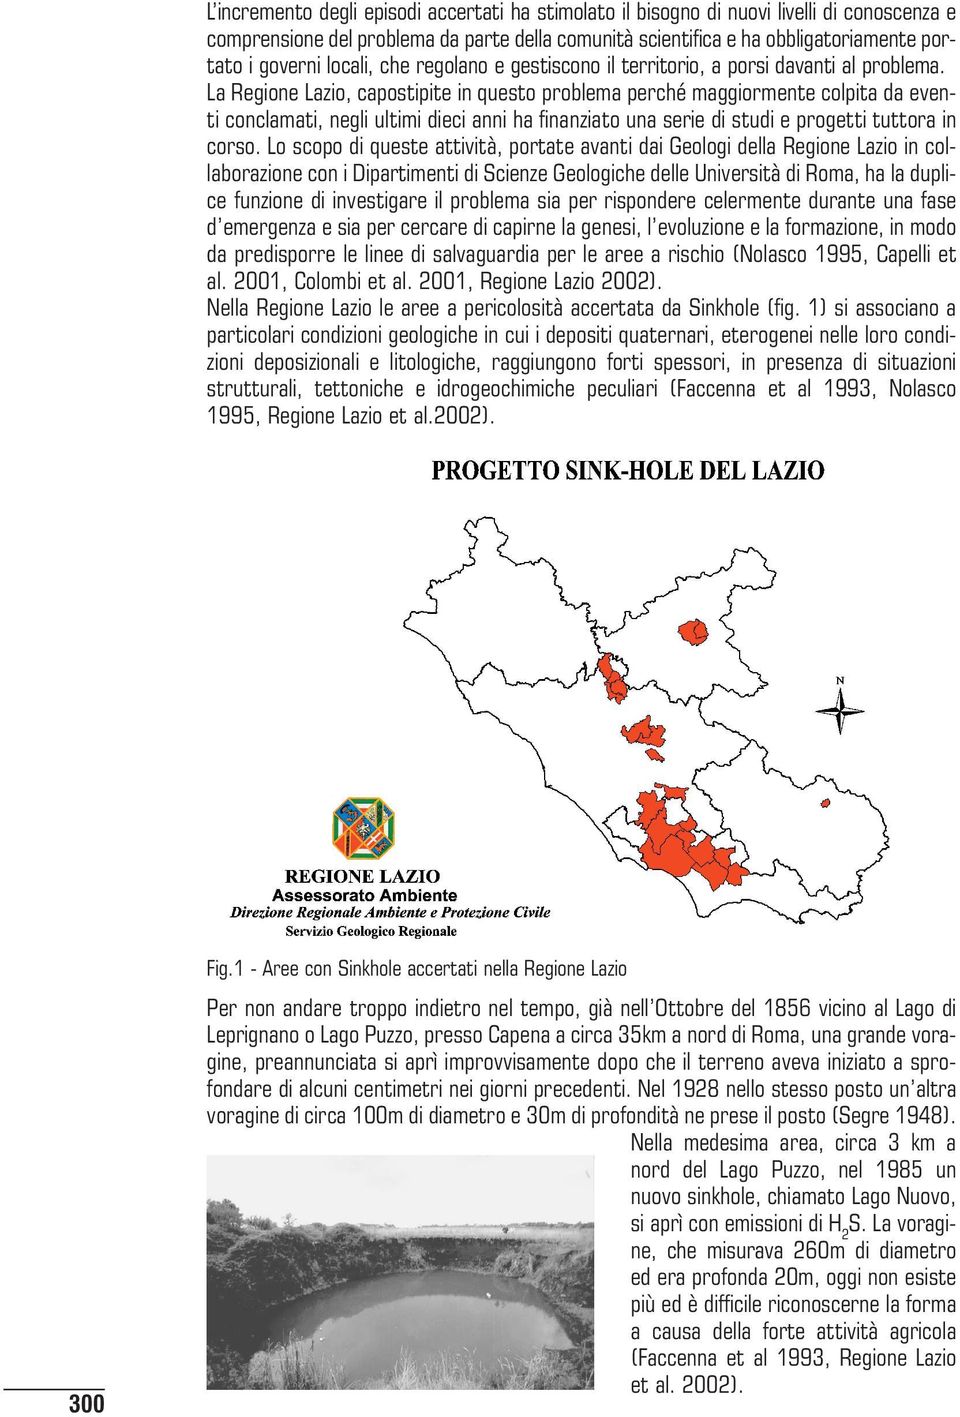 La Regione Lazio, capostipite in questo problema perché maggiormente colpita da eventi conclamati, negli ultimi dieci anni ha finanziato una serie di studi e progetti tuttora in corso.